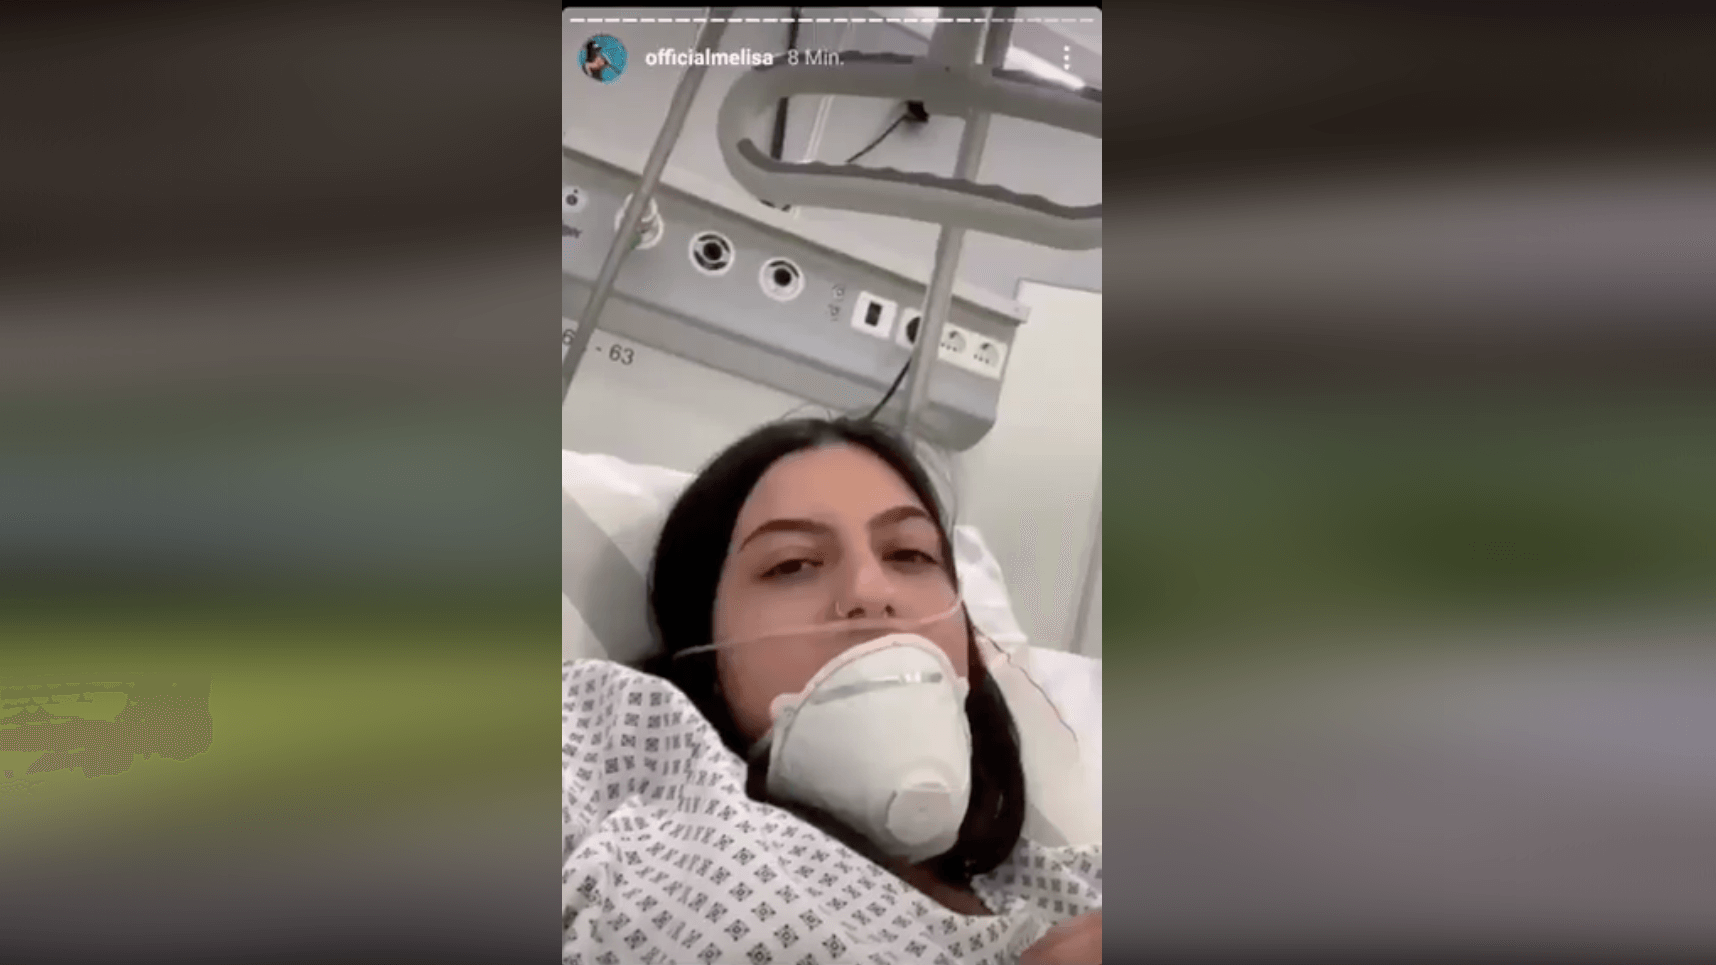 Dieses Instagram-Video wurde in Sozialen Netzwerken mit der Behauptung verbreitet, es zeige, wie mit gestellten Aufnahmen Panik vor Corona geschürt werden soll. Das ist falsch, es handelte sich lediglich um eine medizinische Übung eines Krankenhauses in Berlin.